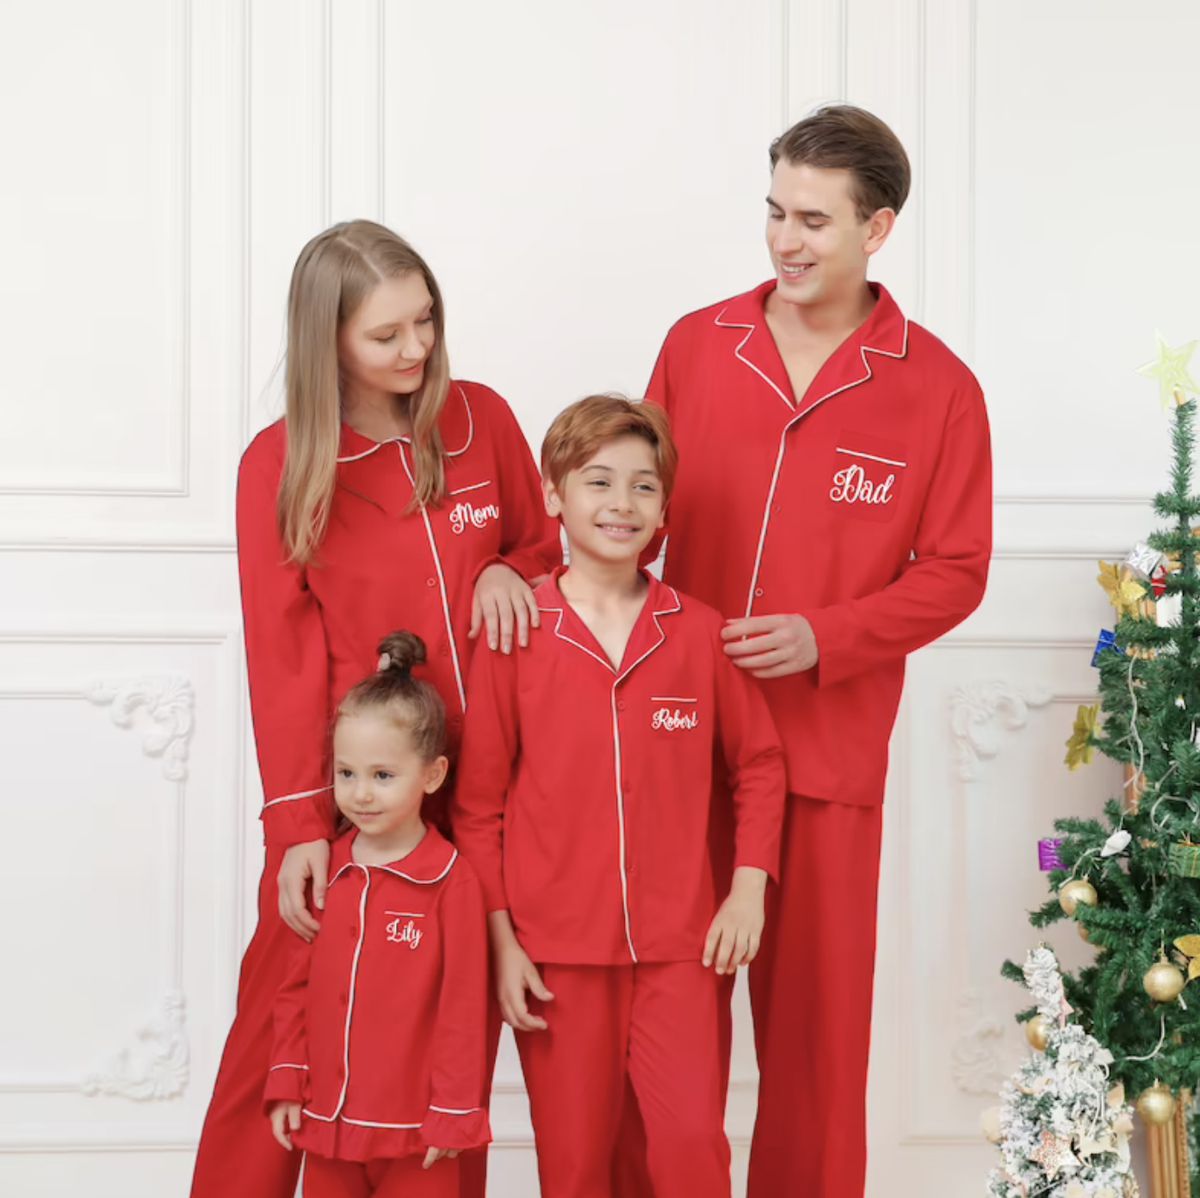 Personalized Family Christmas Pajamas